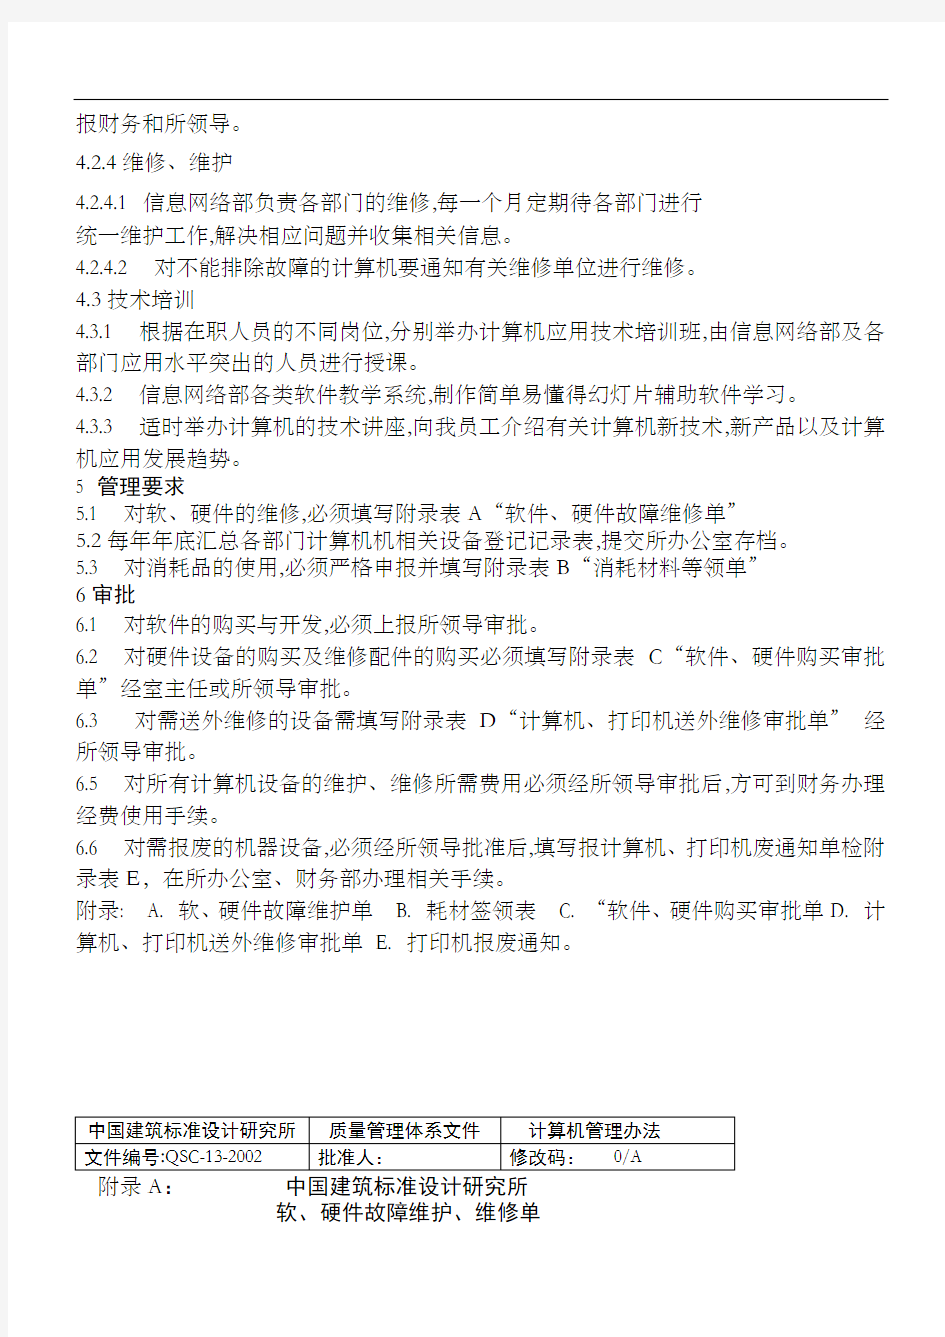 中国建筑标准设计研究所计算机管理办法